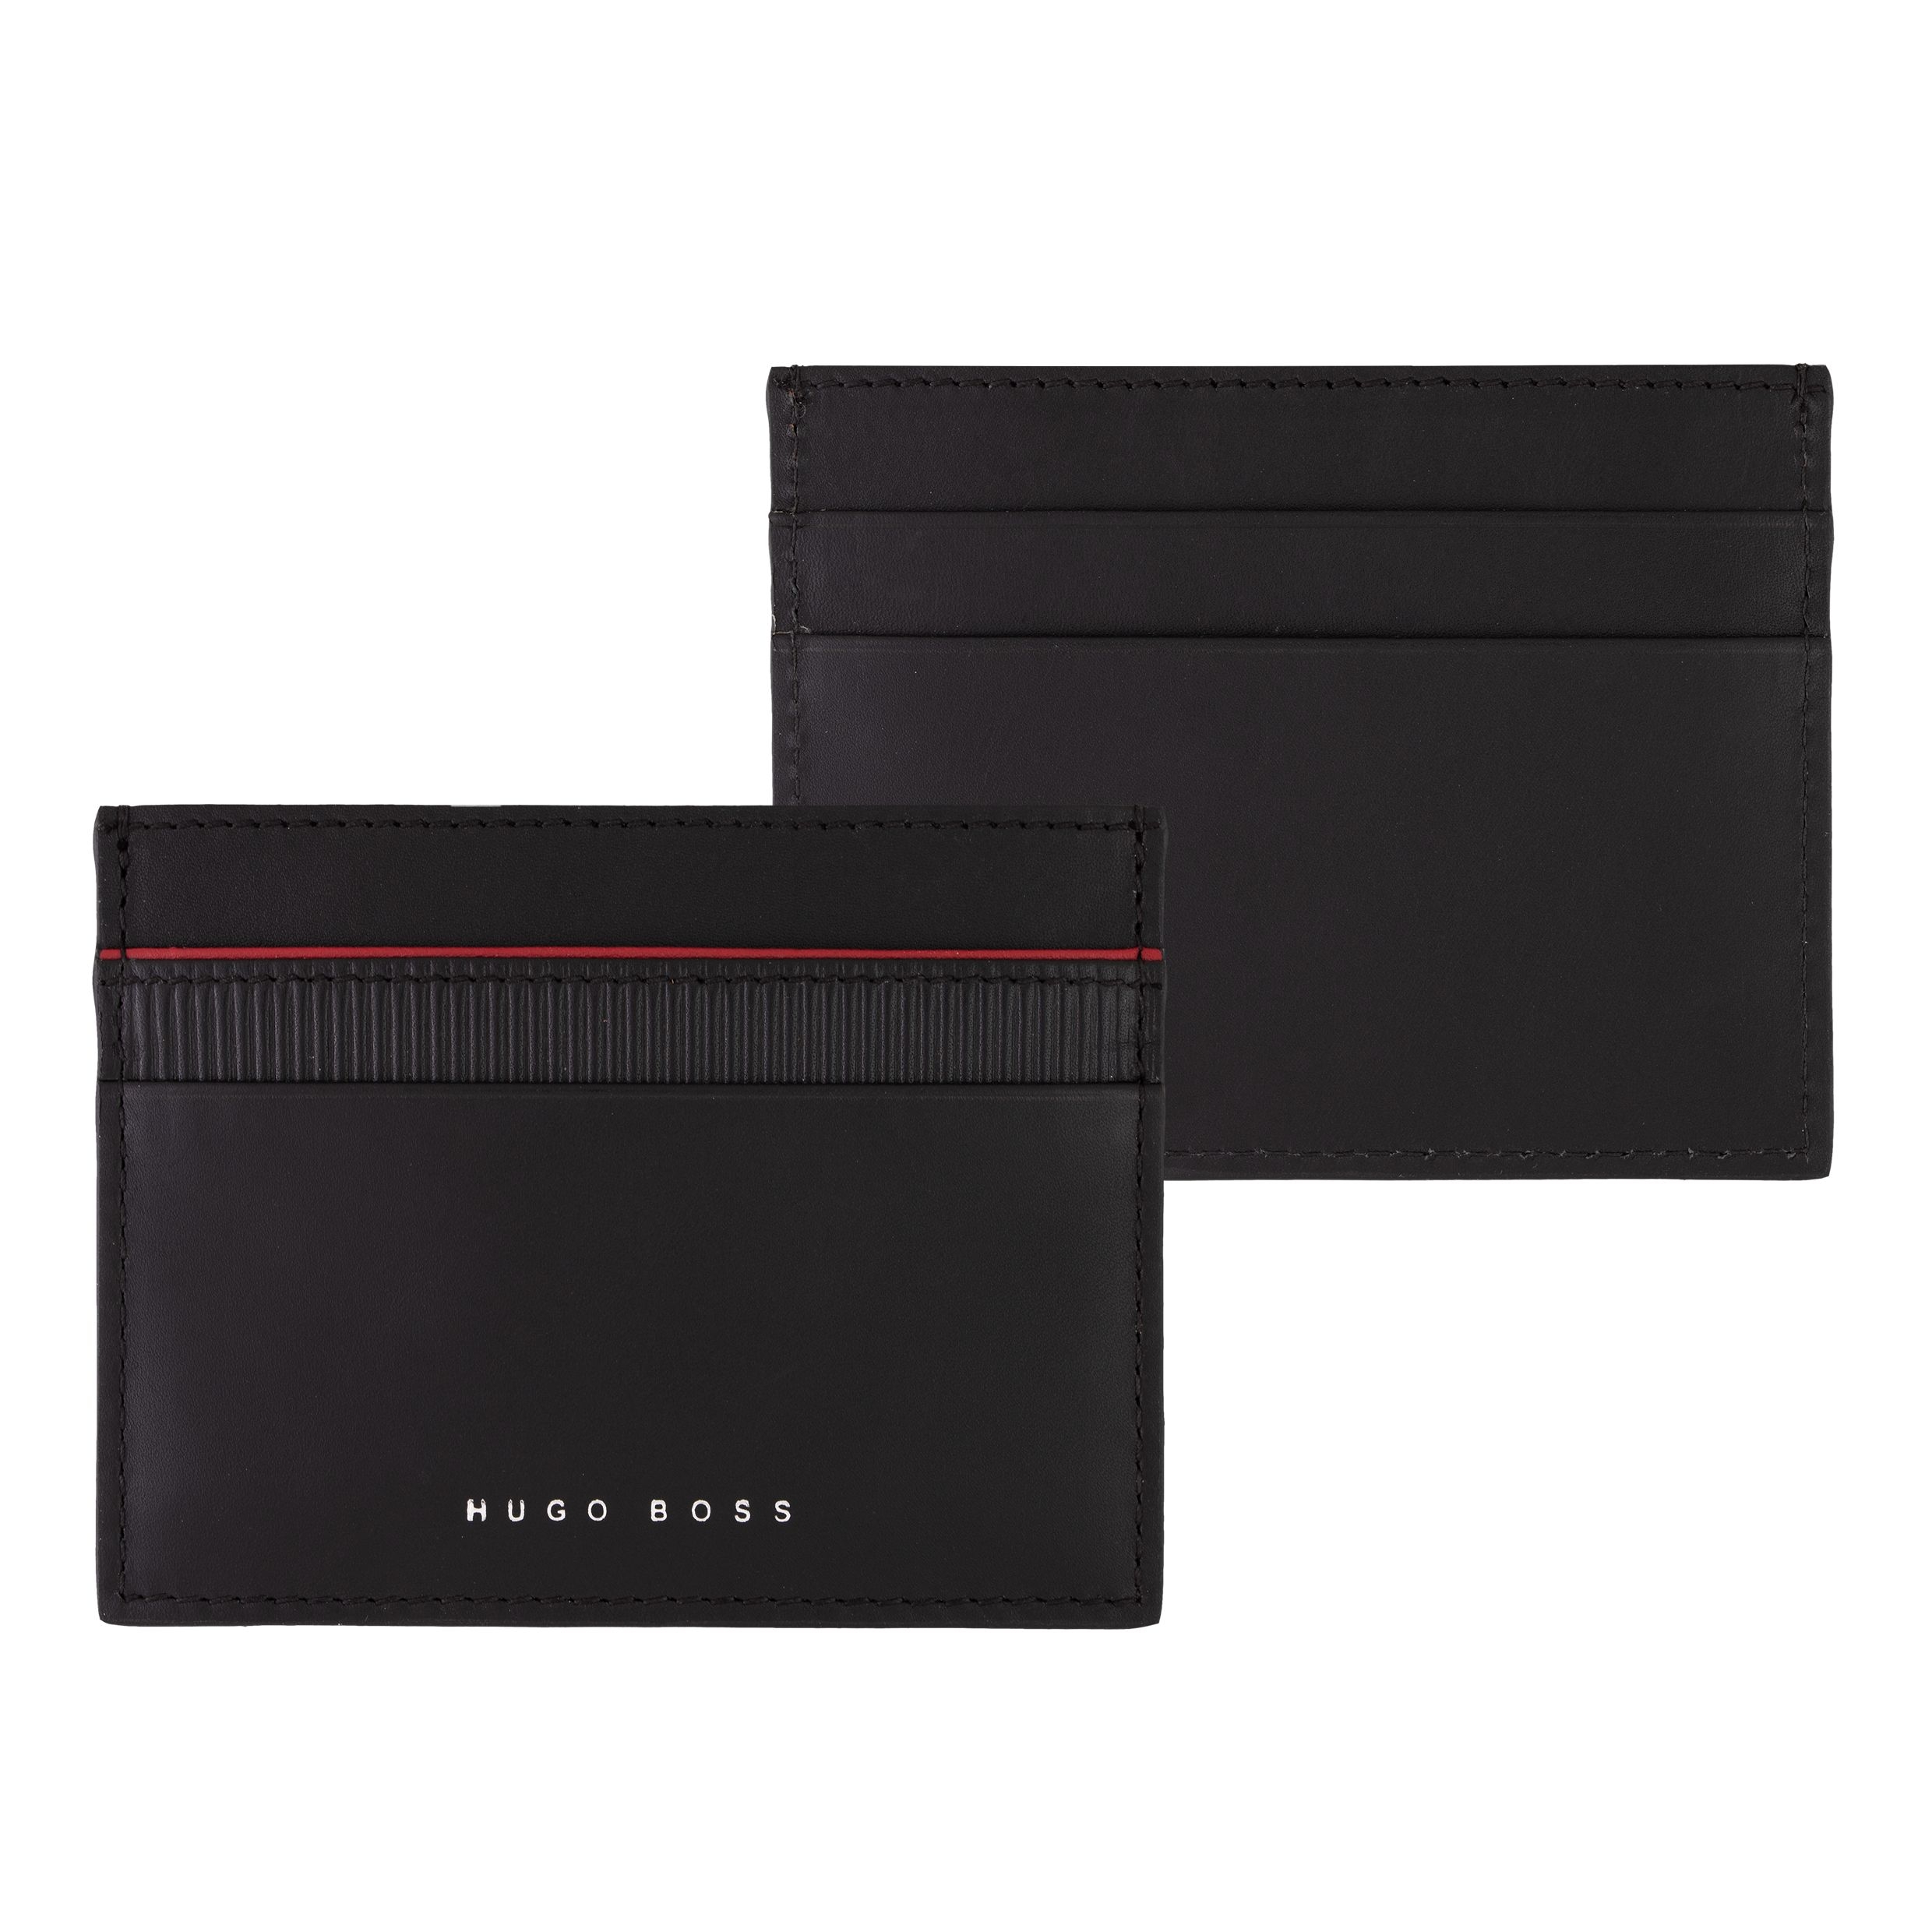 Hugo Boss Card Holder Gear Black - Transition Store